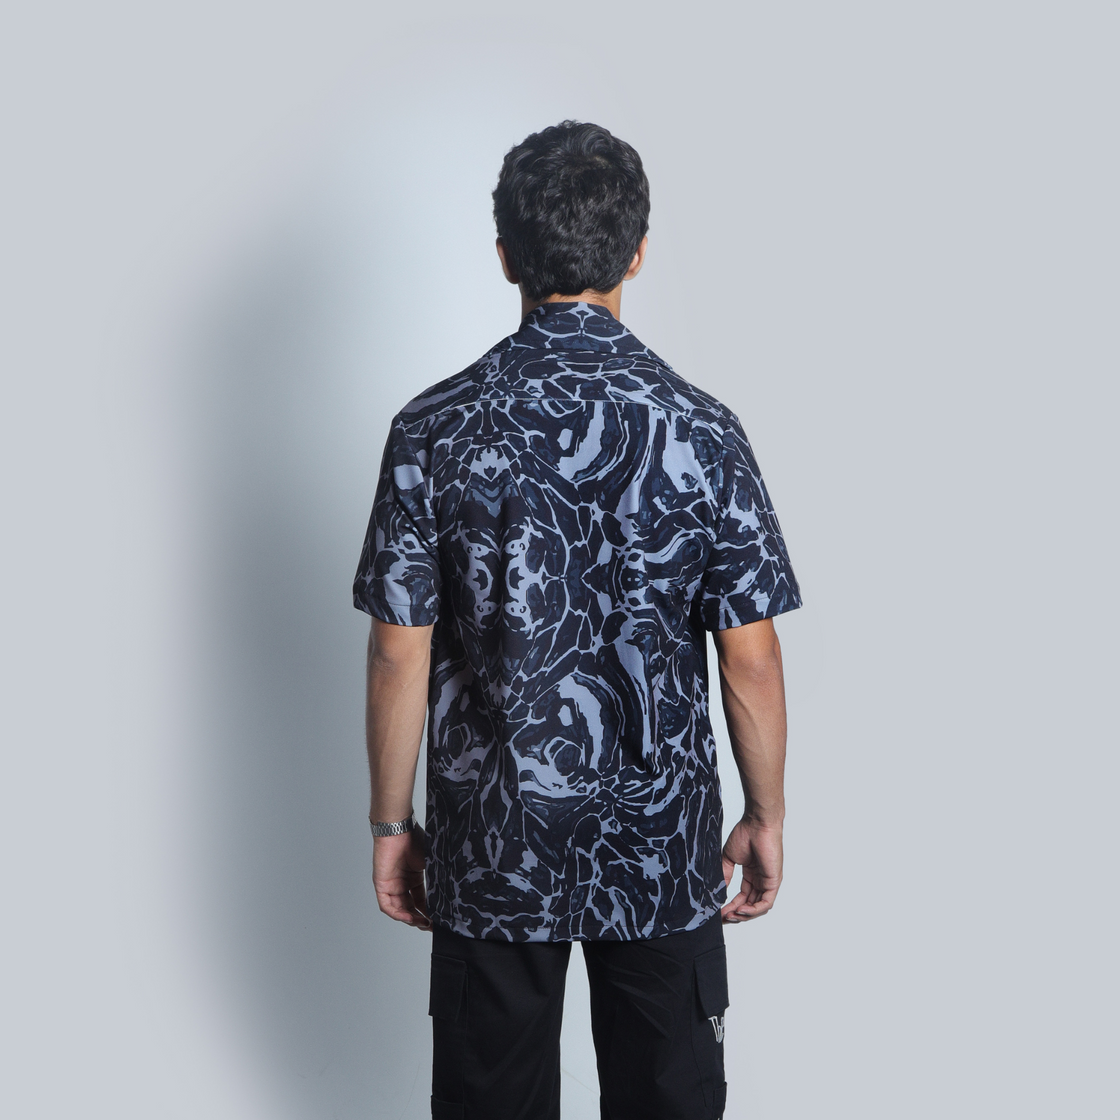 volcanic ash overall printed Shirt